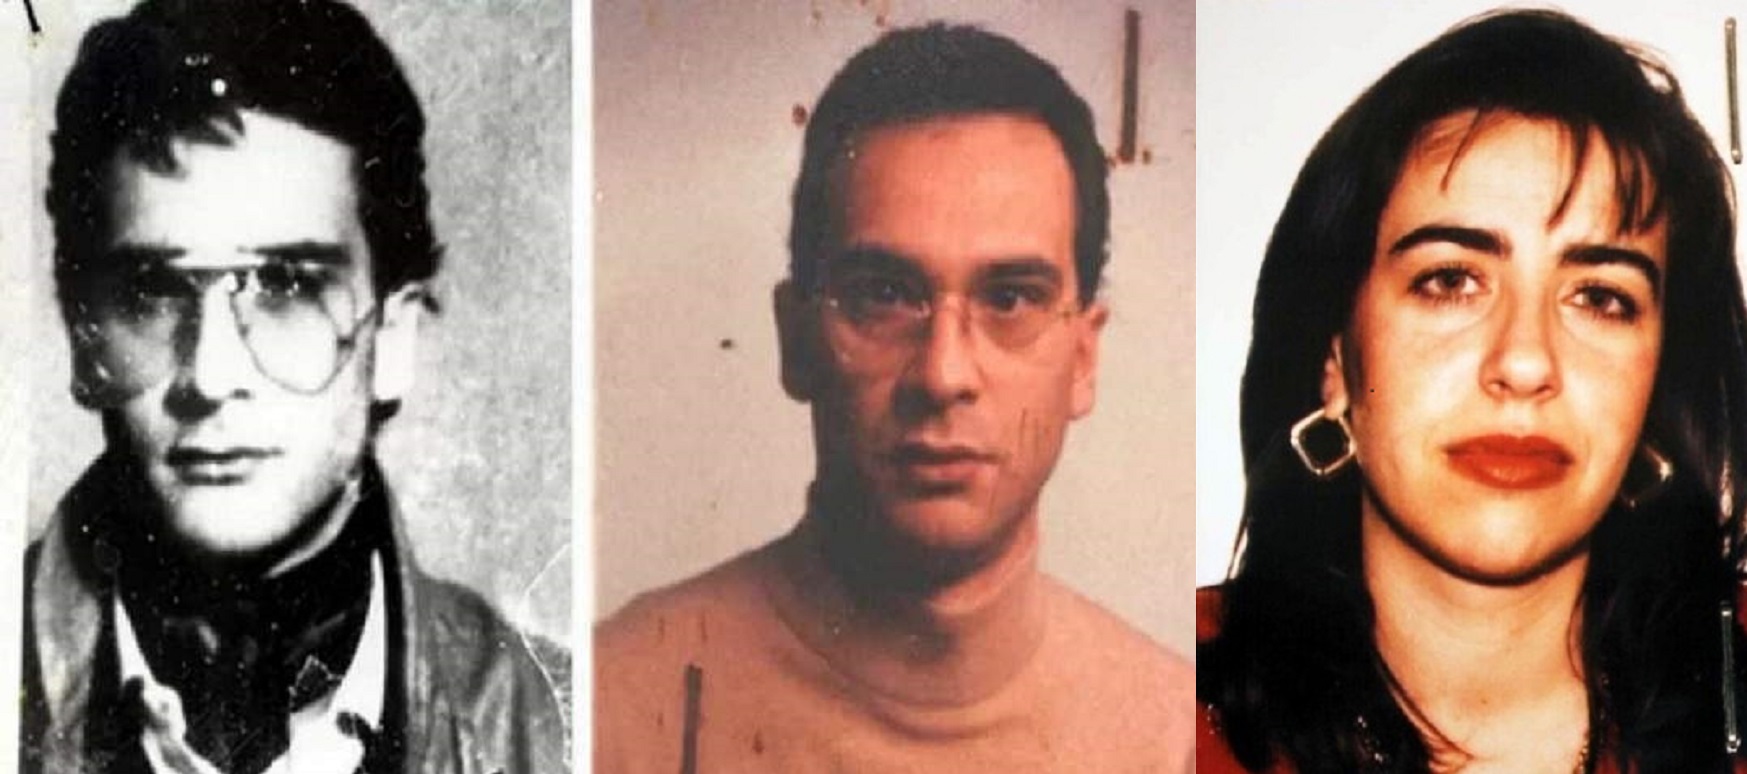 La vecchia fiamma dei videogiochi, l’imprenditrice, l’insegnante: le tre donne nell’indagine su Matteo Messina Denaro